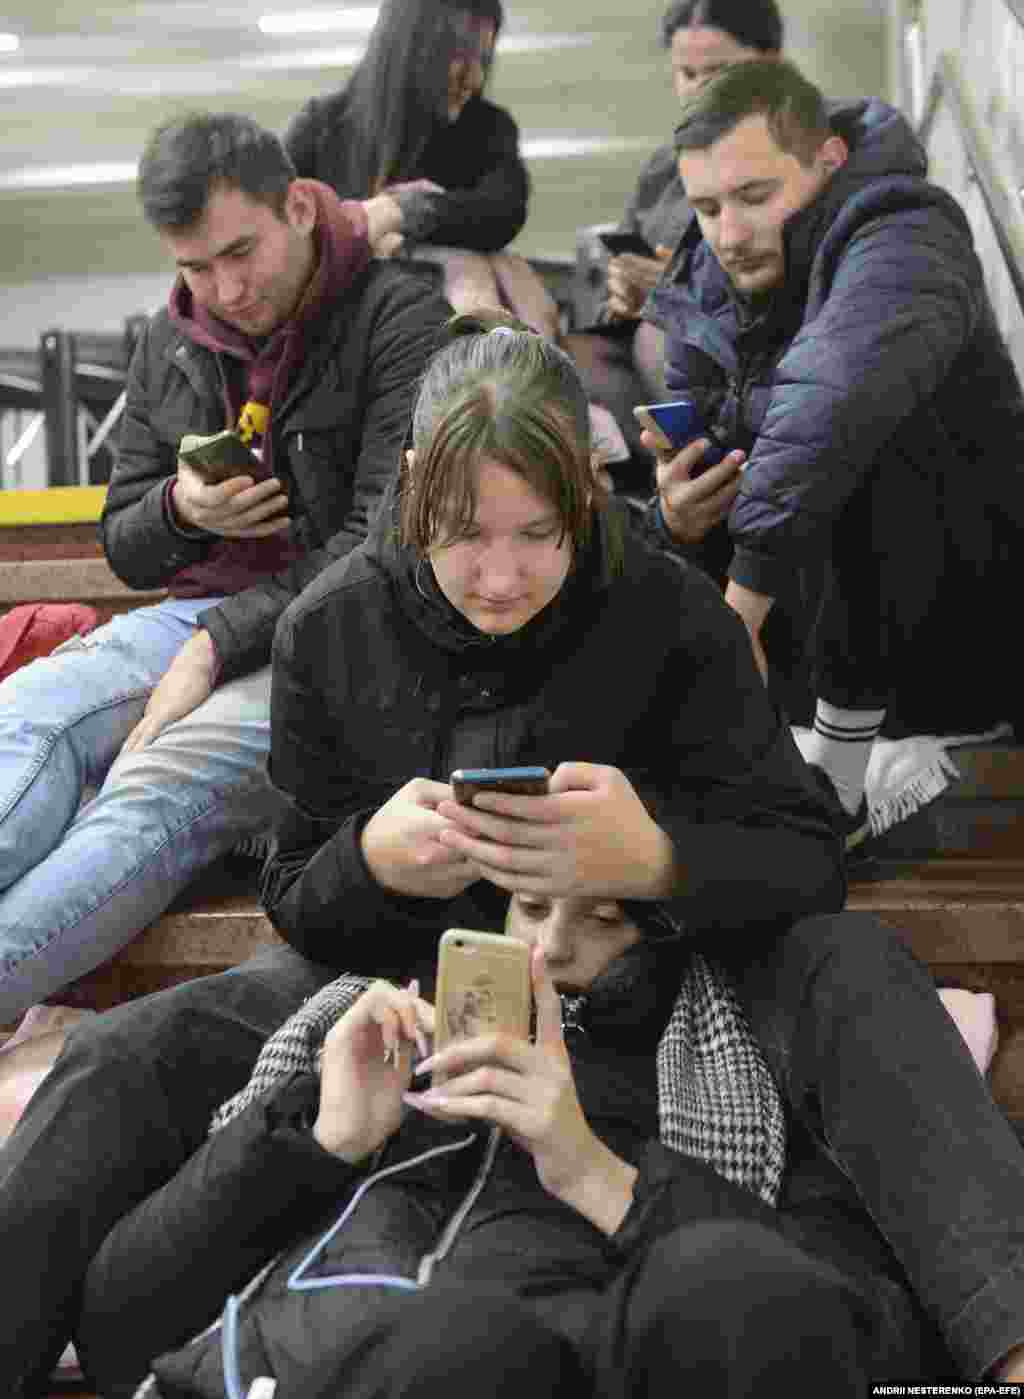 Un grup de civili urmăresc știrile pe telefoane în timp ce se adăpostesc în interiorul unei stații de metrou din Kiev, Ucraina, 31 octombrie.